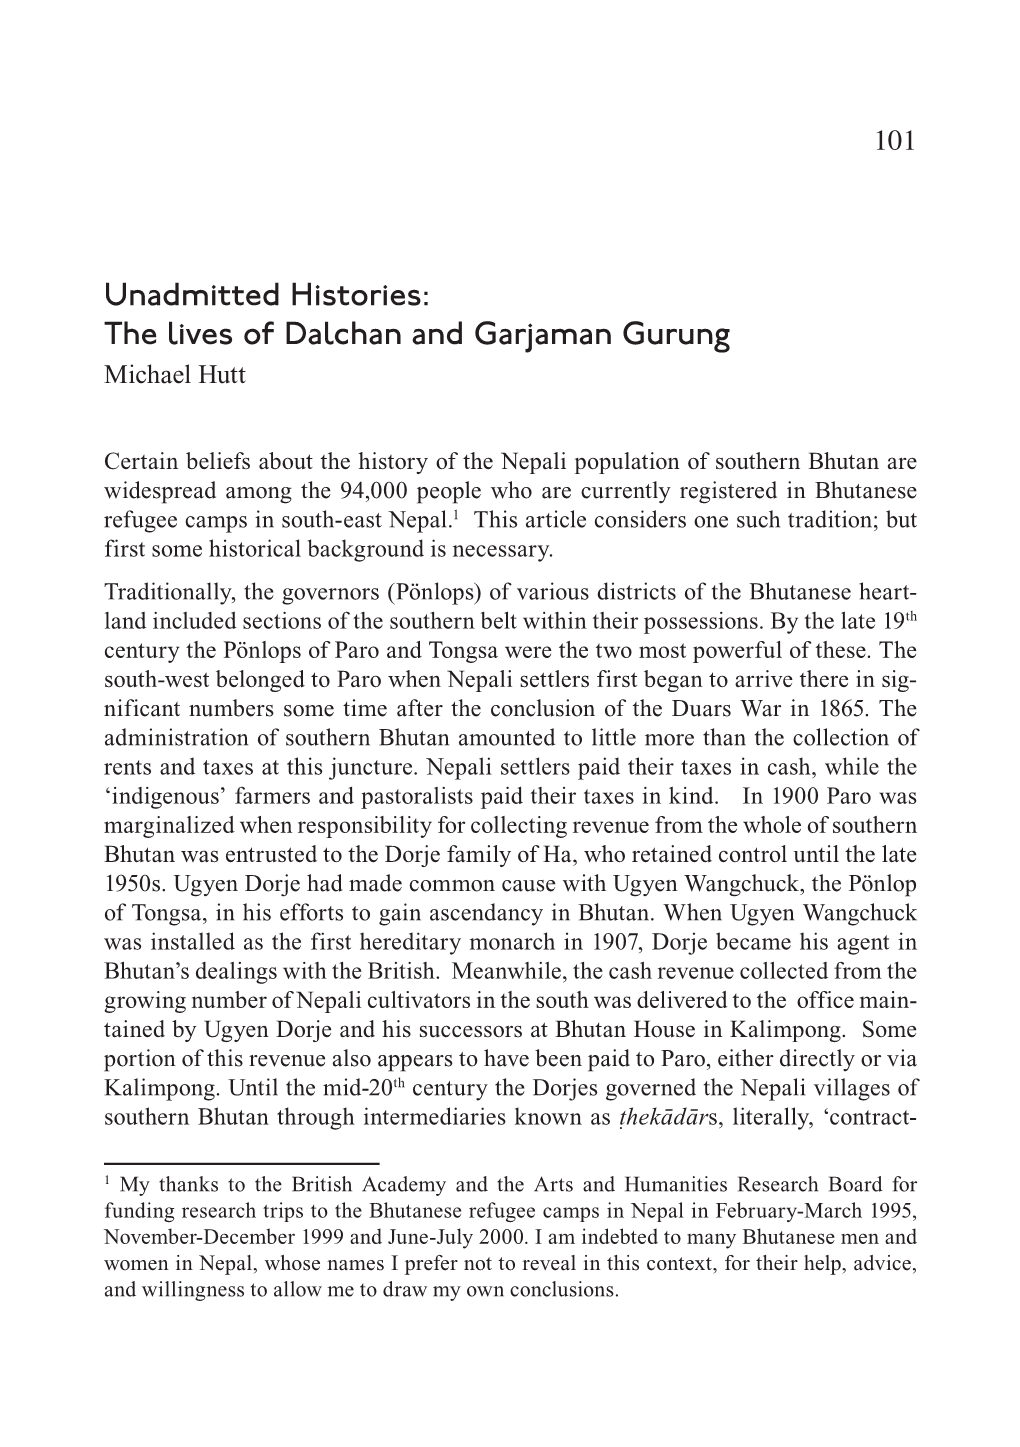 The Lives of Dalchan and Garjaman Gurung Michael Hutt